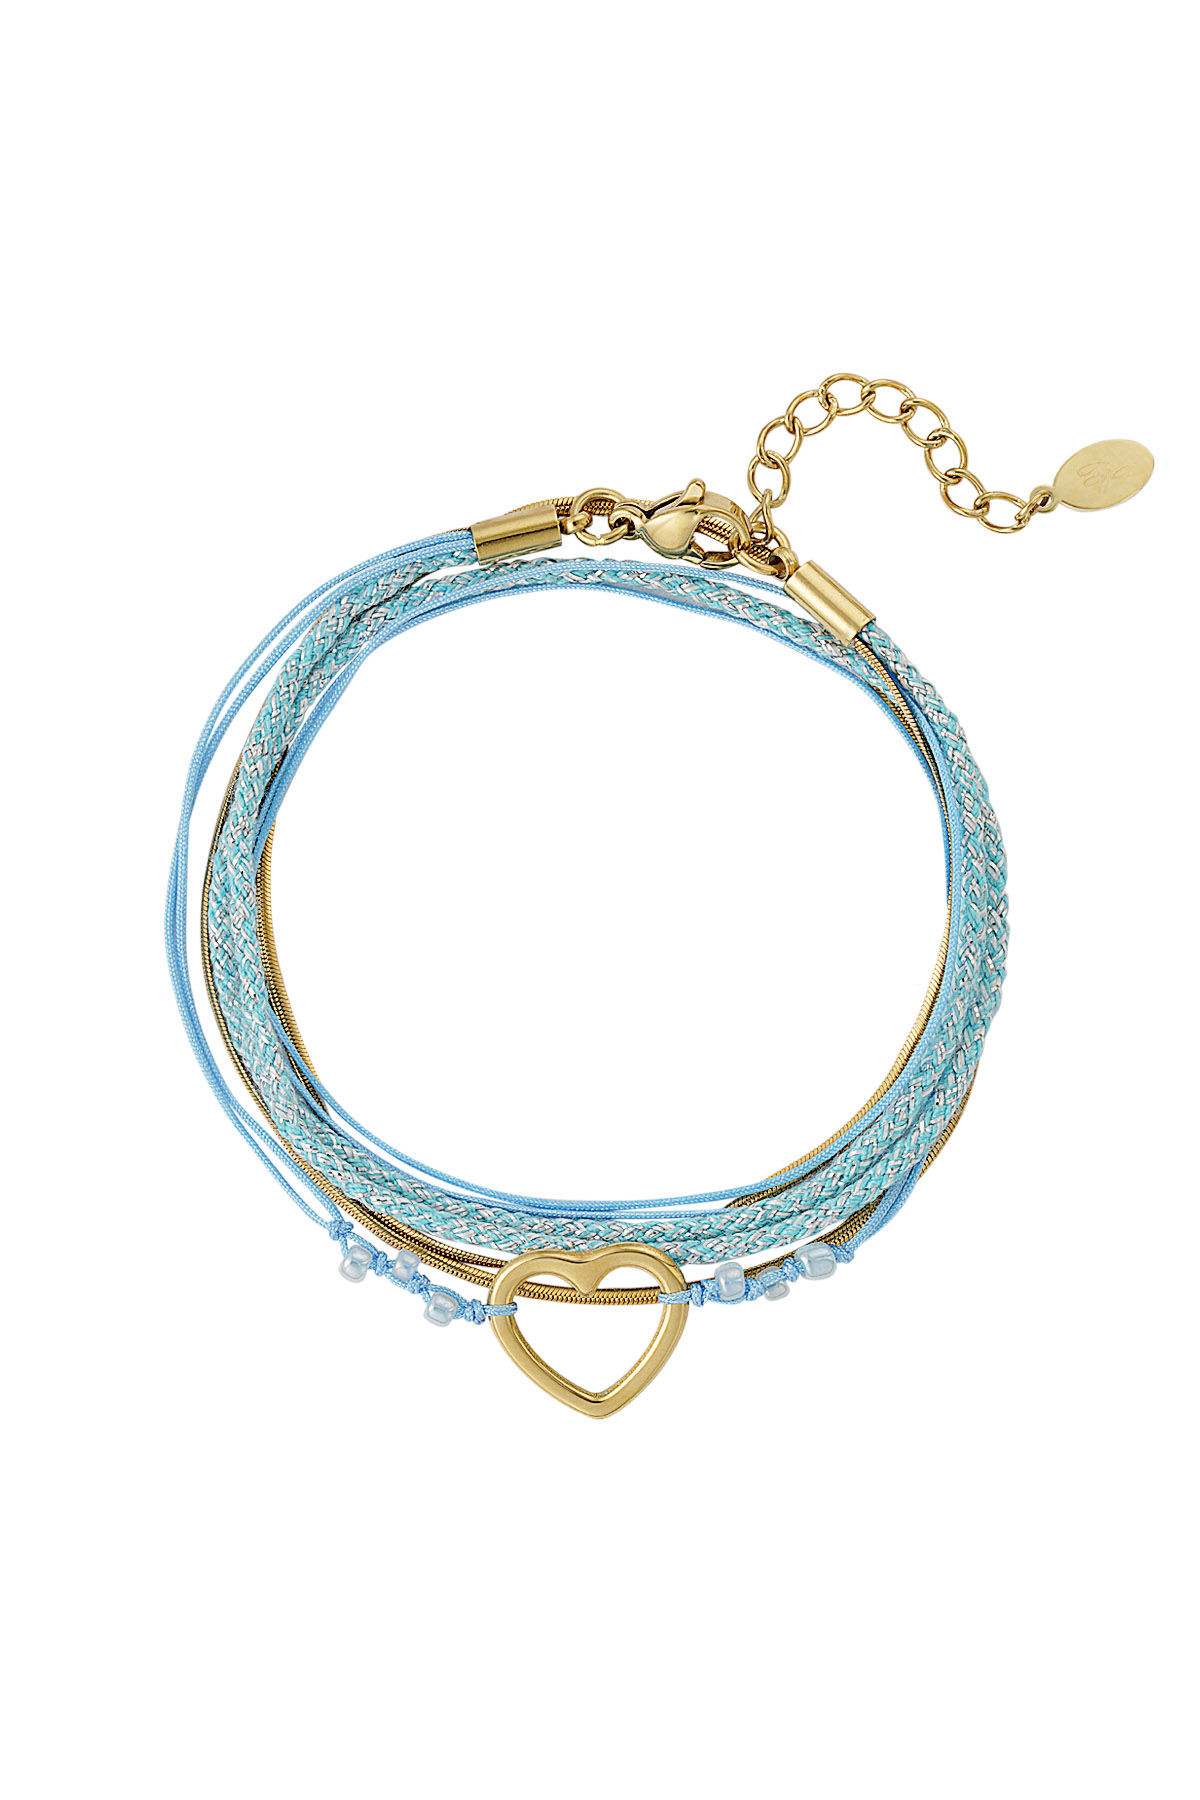 Bracelet summer flow lover - blue gold h5 